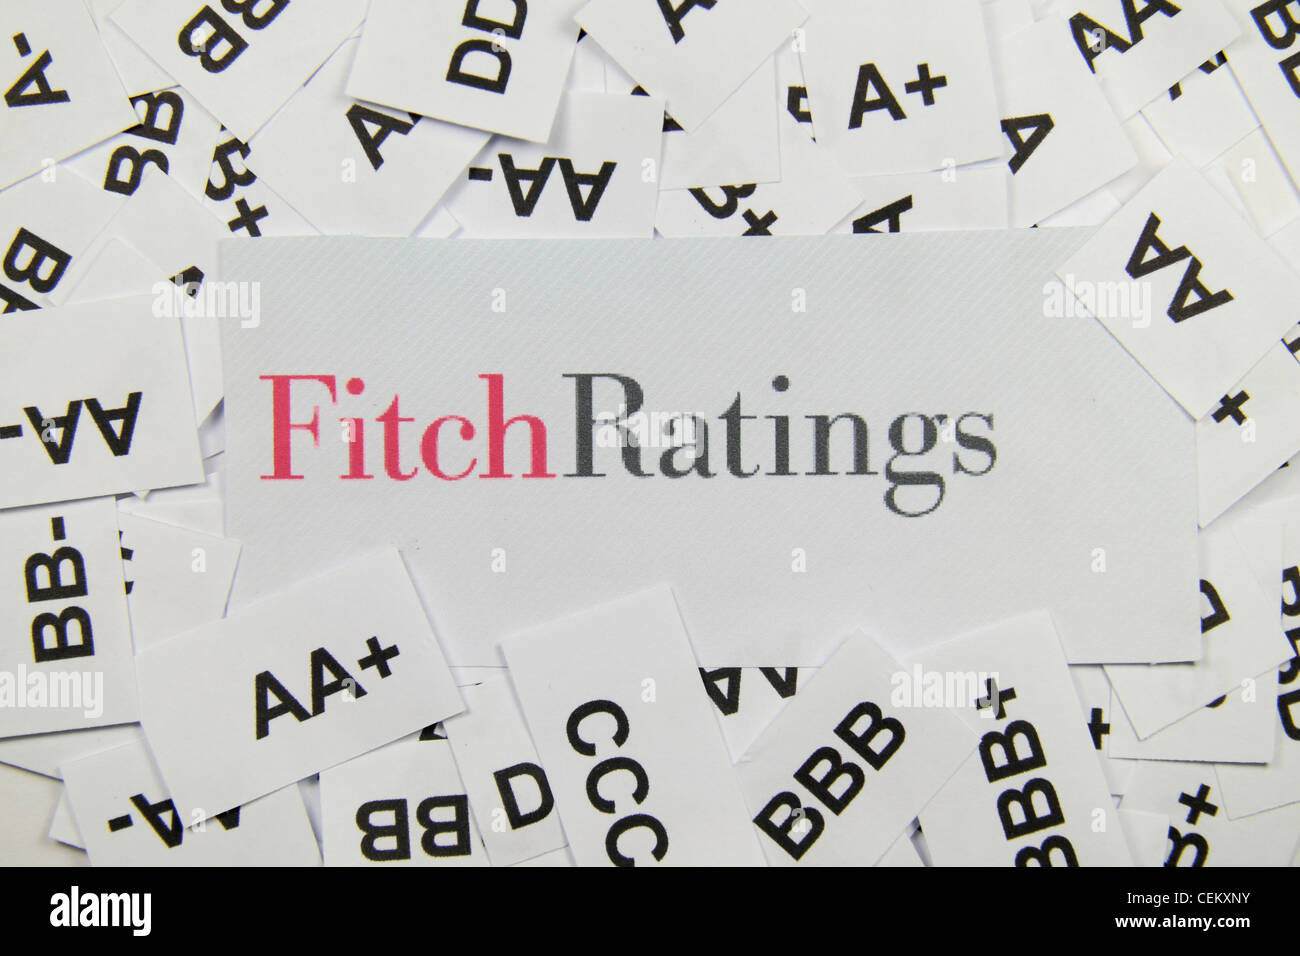 La agencia crediticia Fitch Ratings logotipo, en una cama de las calificaciones crediticias utilizadas por ellos para evaluar empresas. Foto de stock